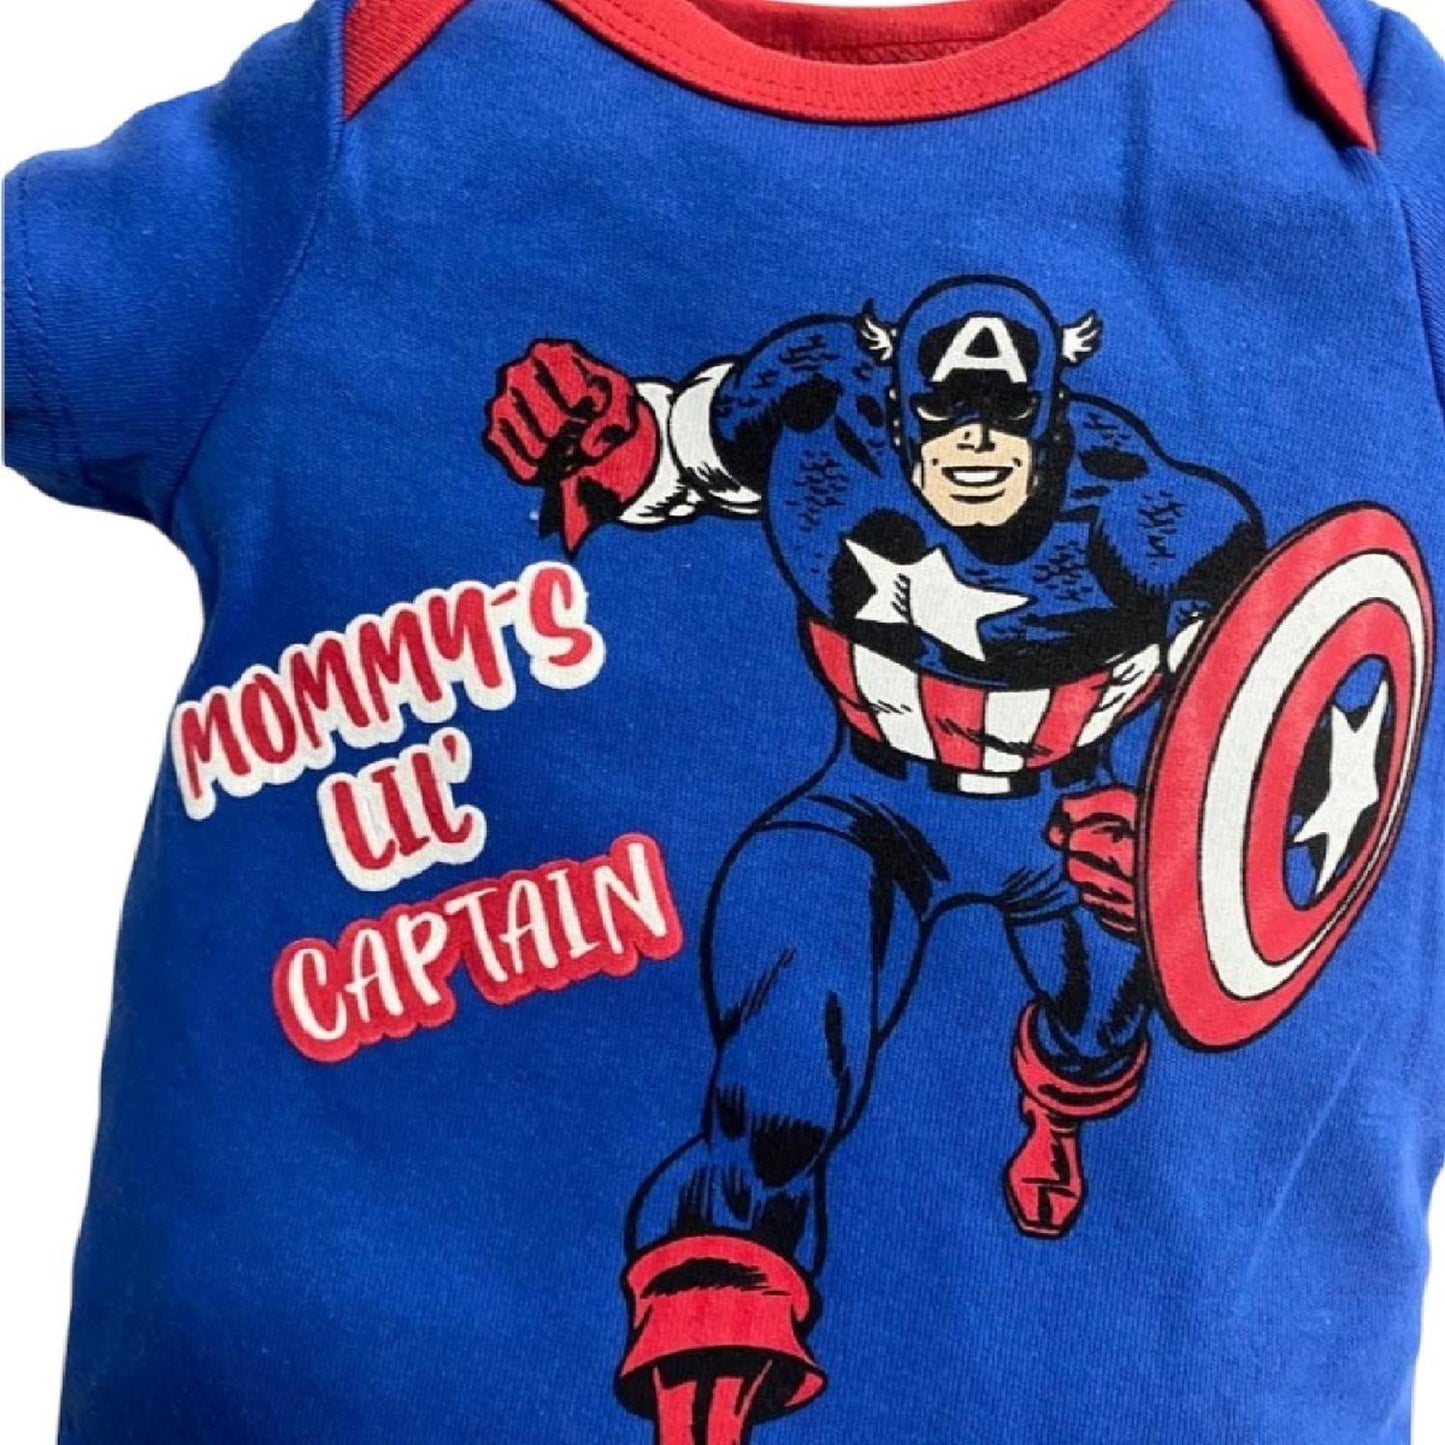 Pañalero Algodon Marvel para Bebé Estampado Capitán América